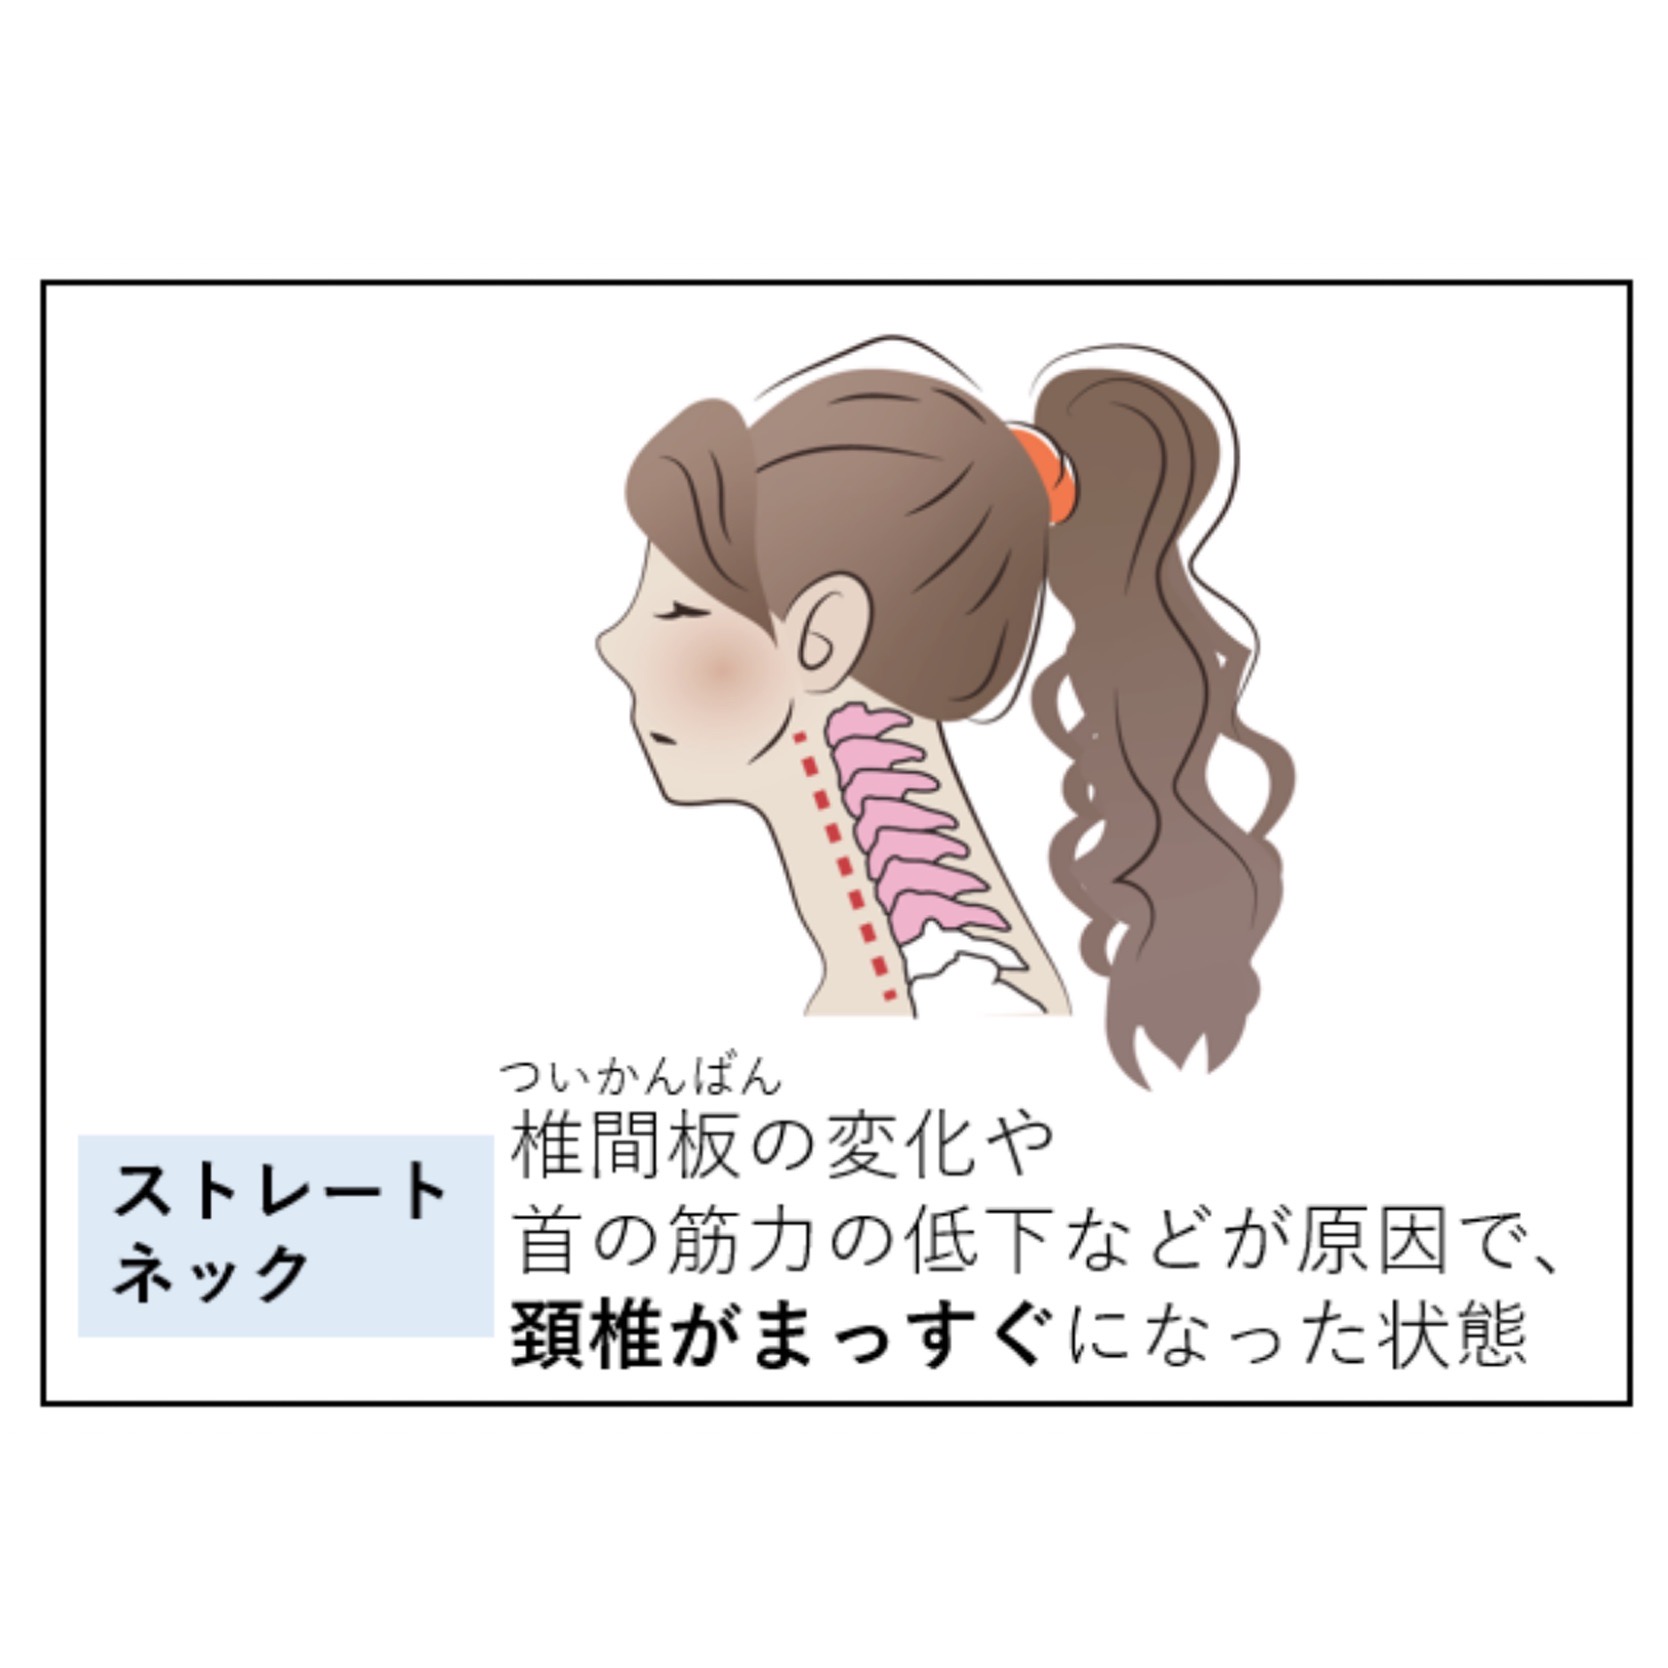 ストレートネック（椎間板の変化や、首の筋力の低下などが原因で、頸椎がまっすぐになった状態）